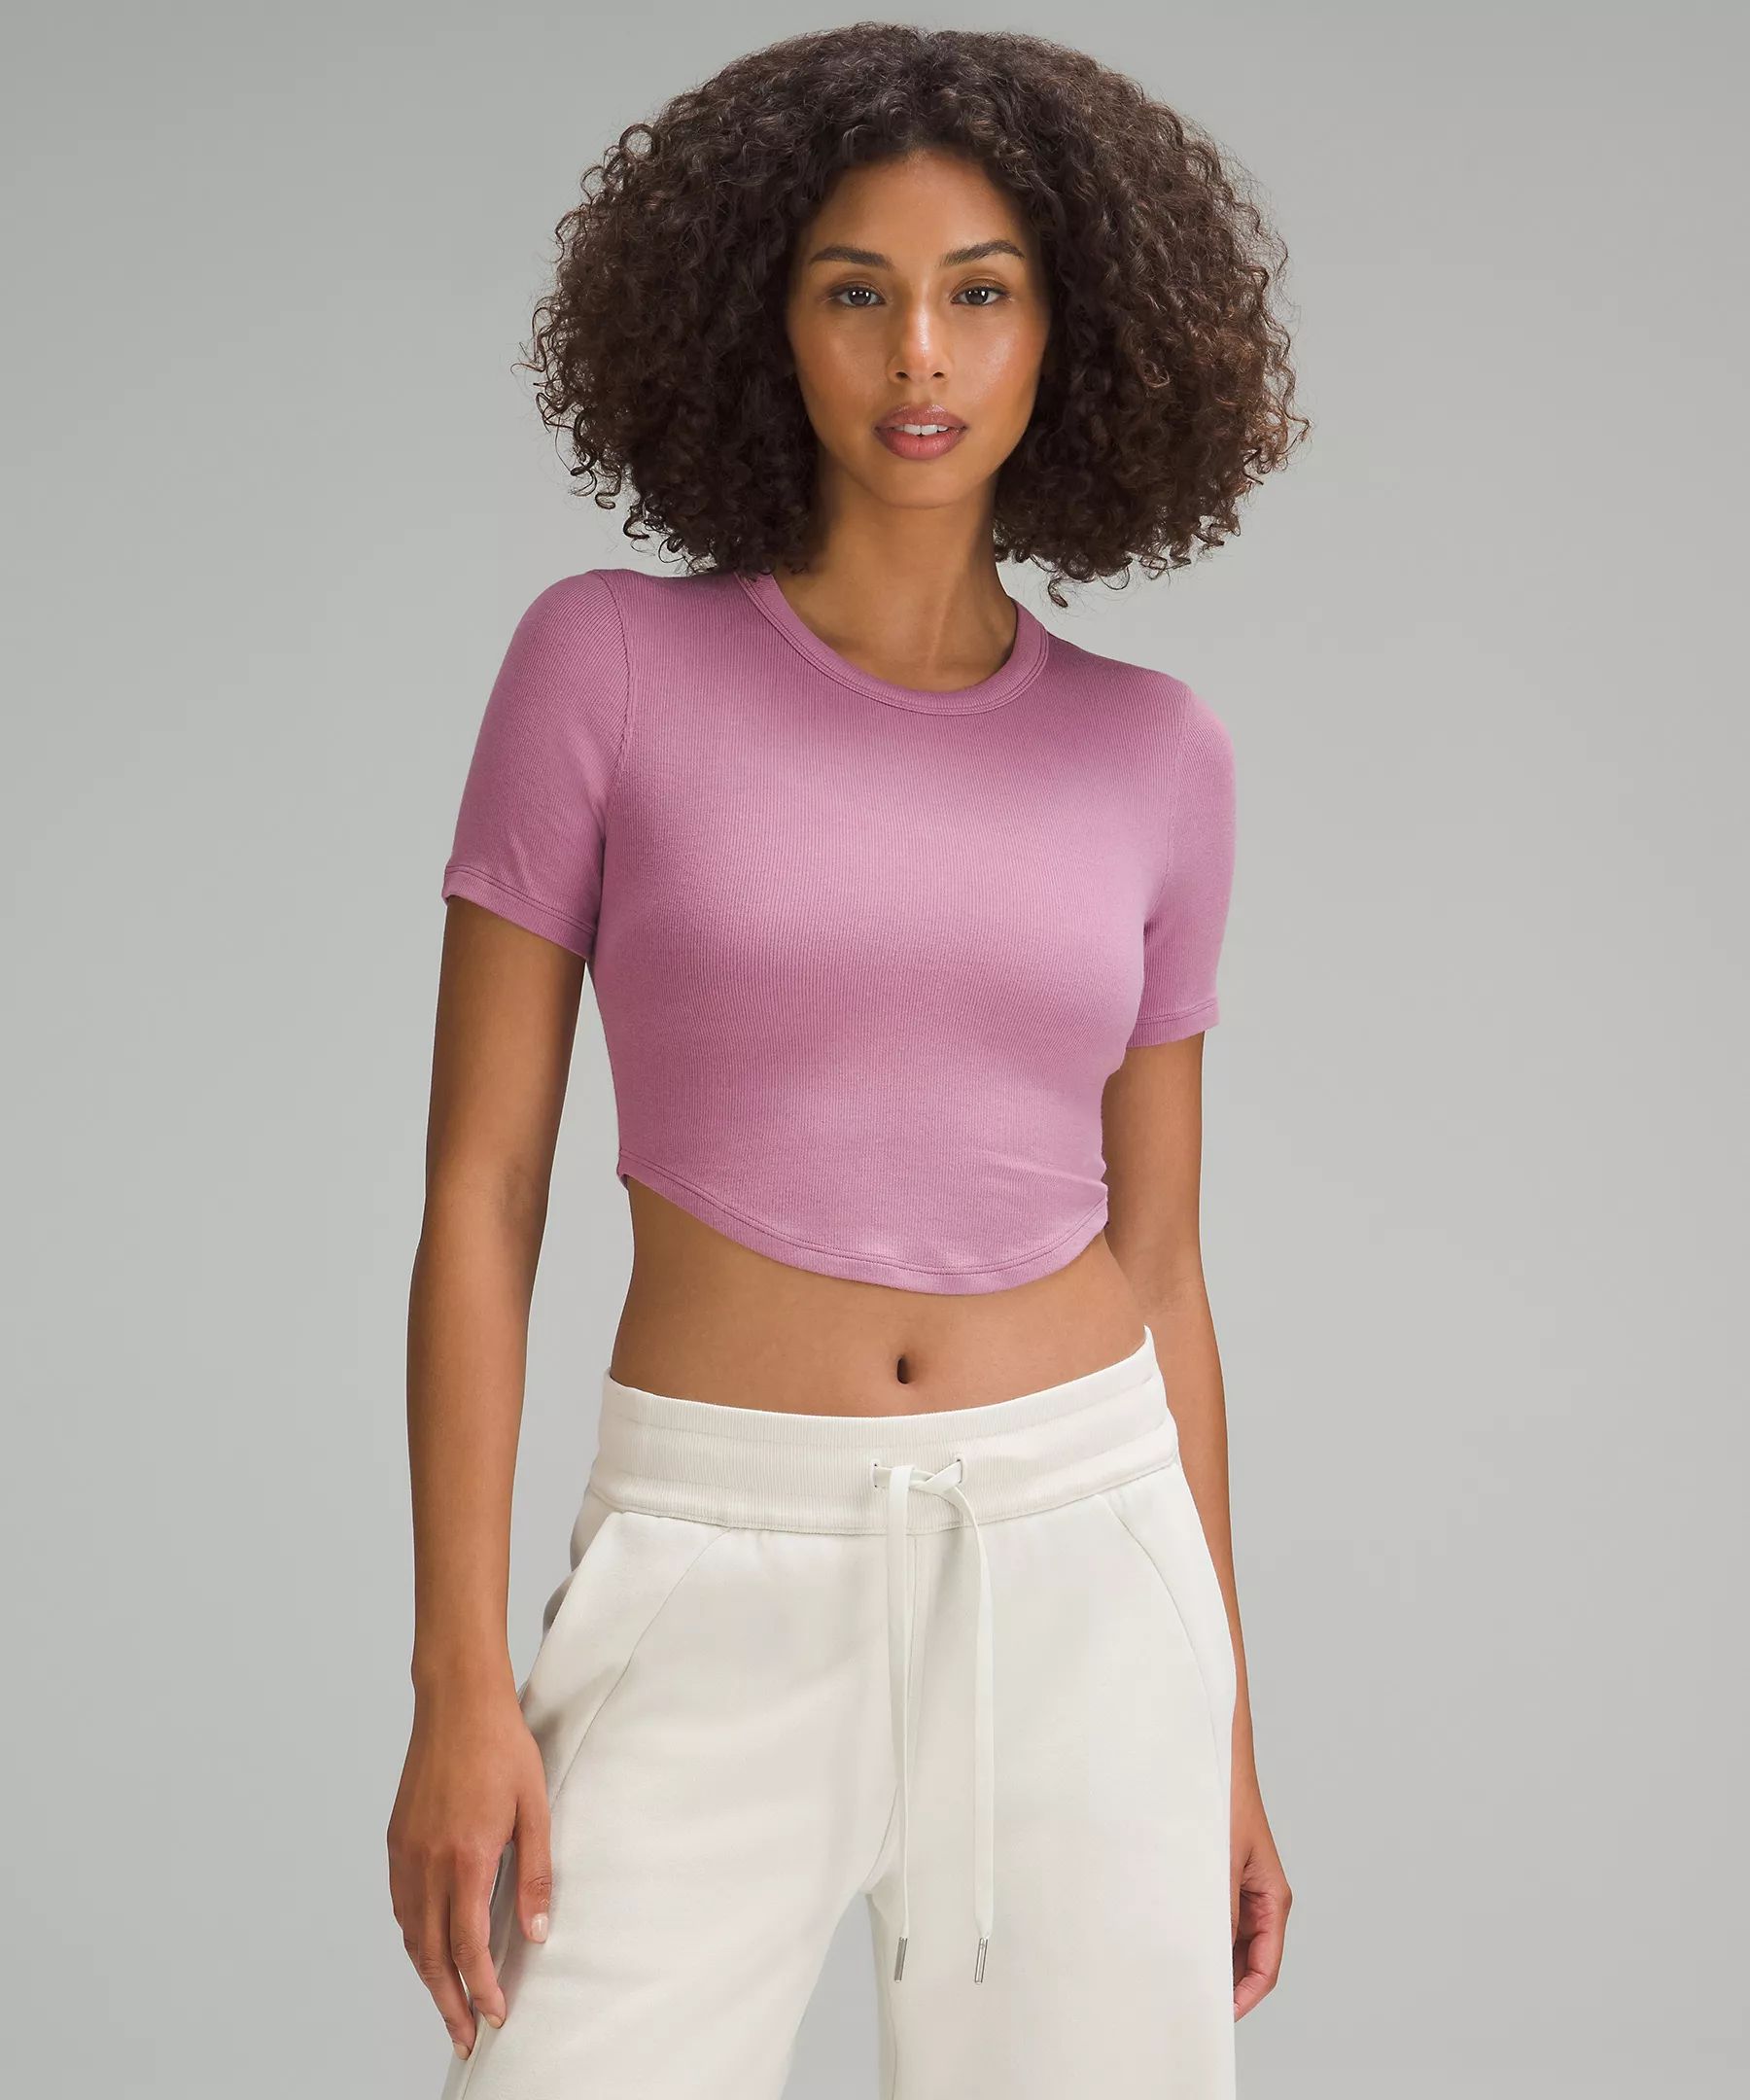 Hold Tight Cropped T-Shirt | Women's Short Sleeve Shirts & Tee's | lululemon | Lululemon (US)